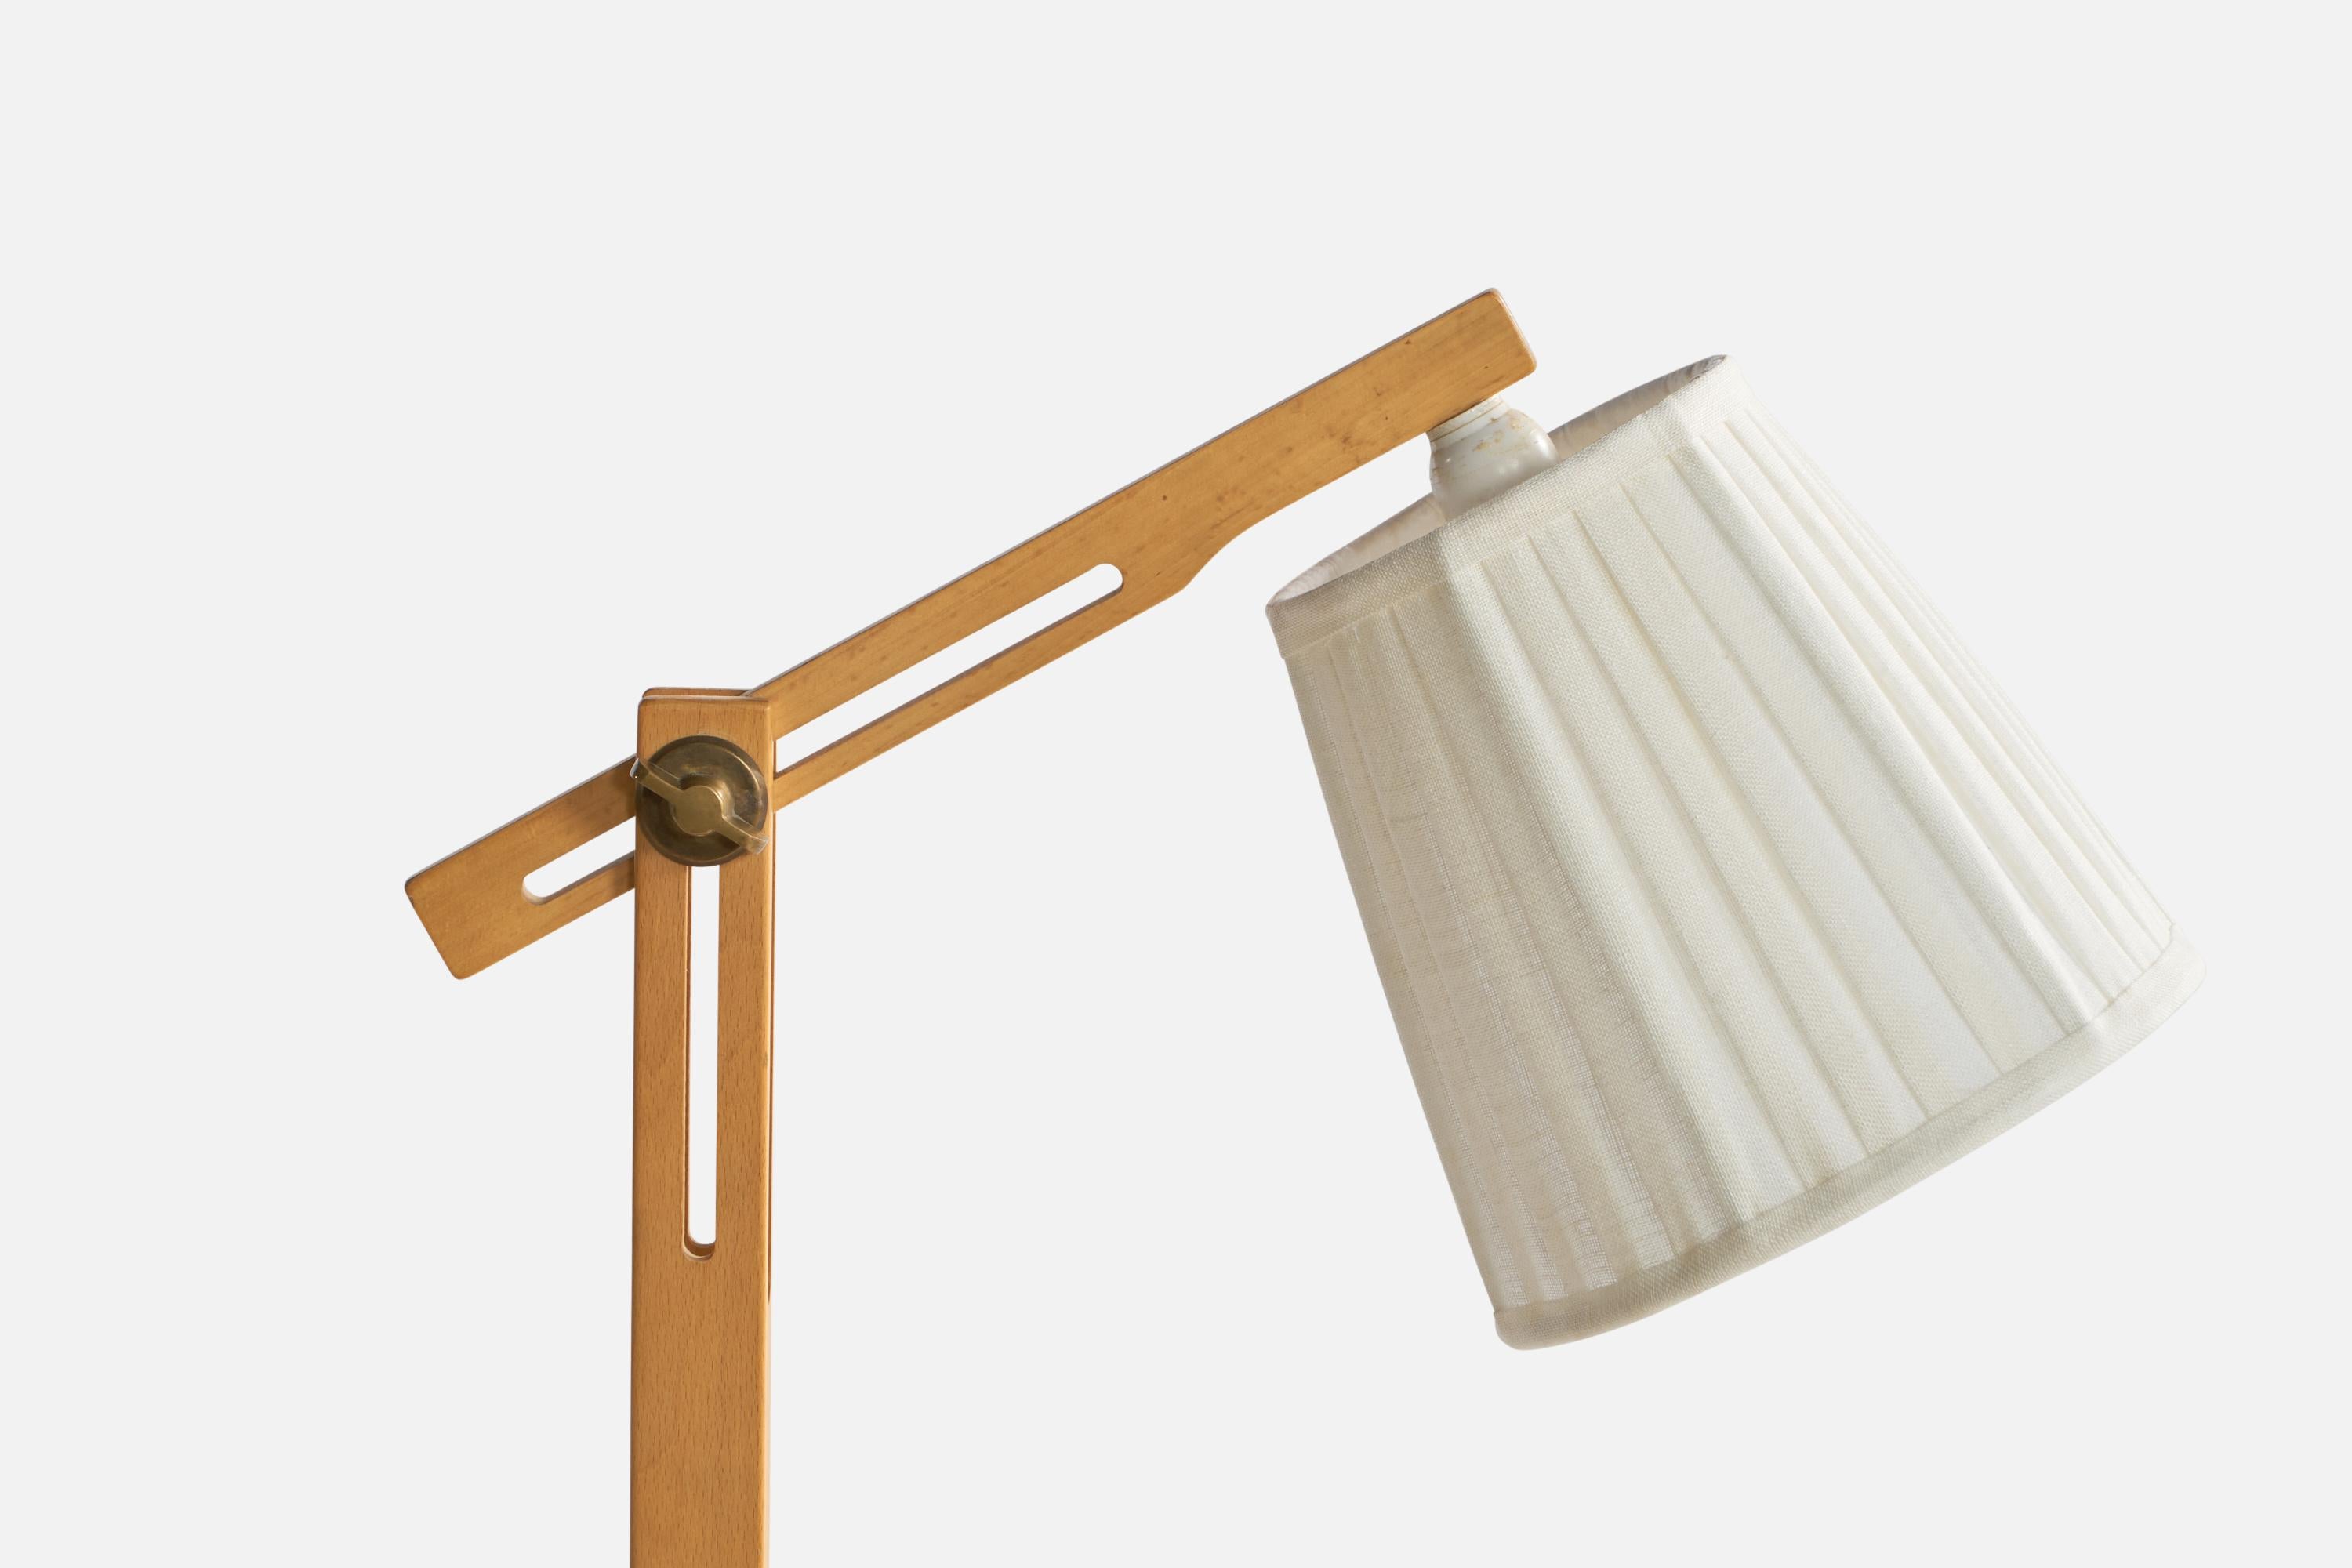 Lampadaire réglable en chêne, laiton et tissu blanc, conçu et produit par Ateljé Lyktan, Suède, c. années 1970.

Dimensions hors tout (pouces) : 50,5